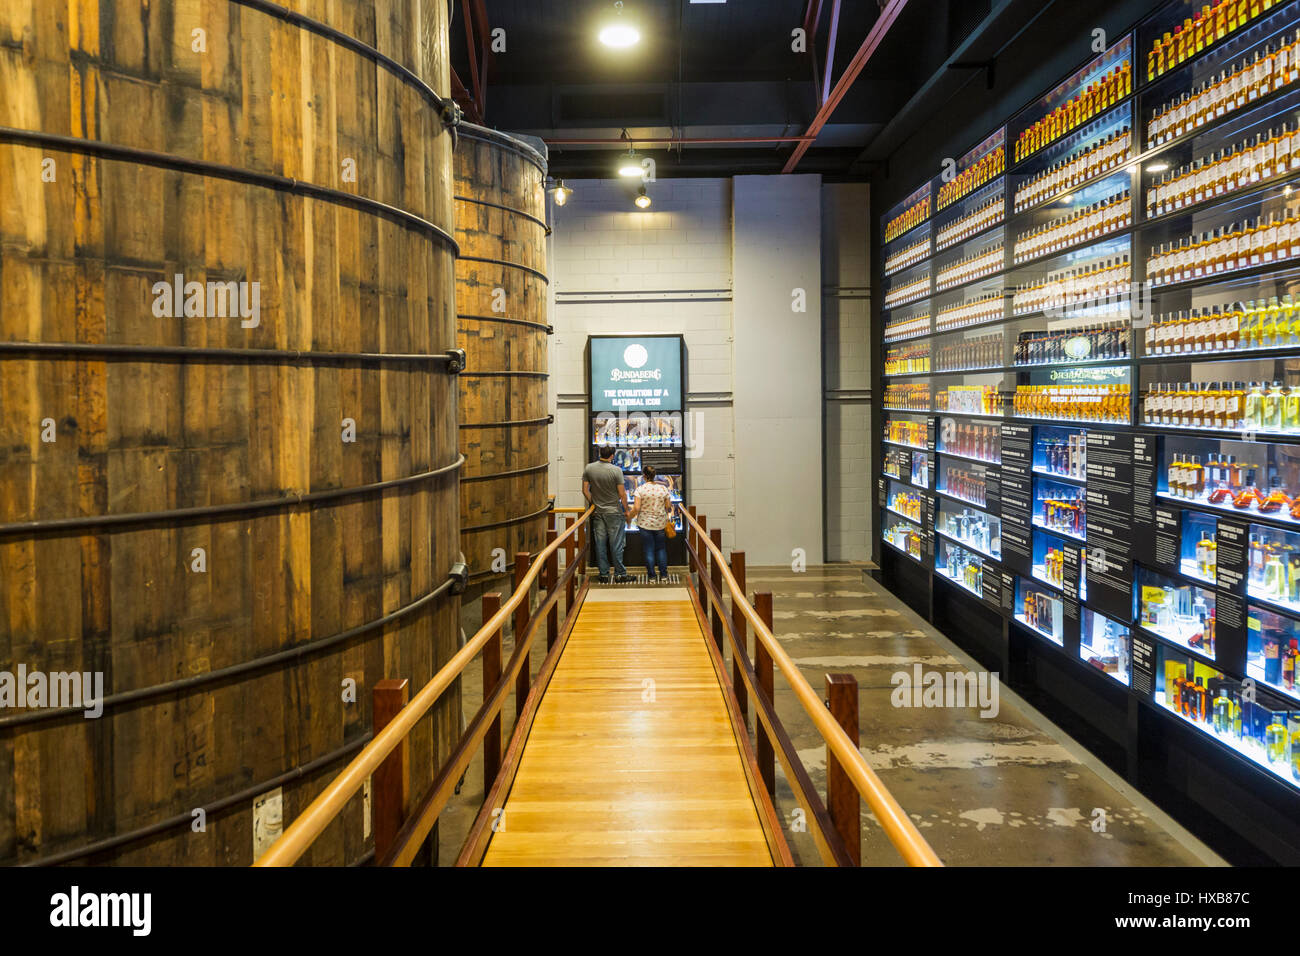 Besucher der Wand des Bundy - eine Geschichte von Bundaberg Rum-Produkte.  Bundaberg, Queensland, Australien Stockfoto